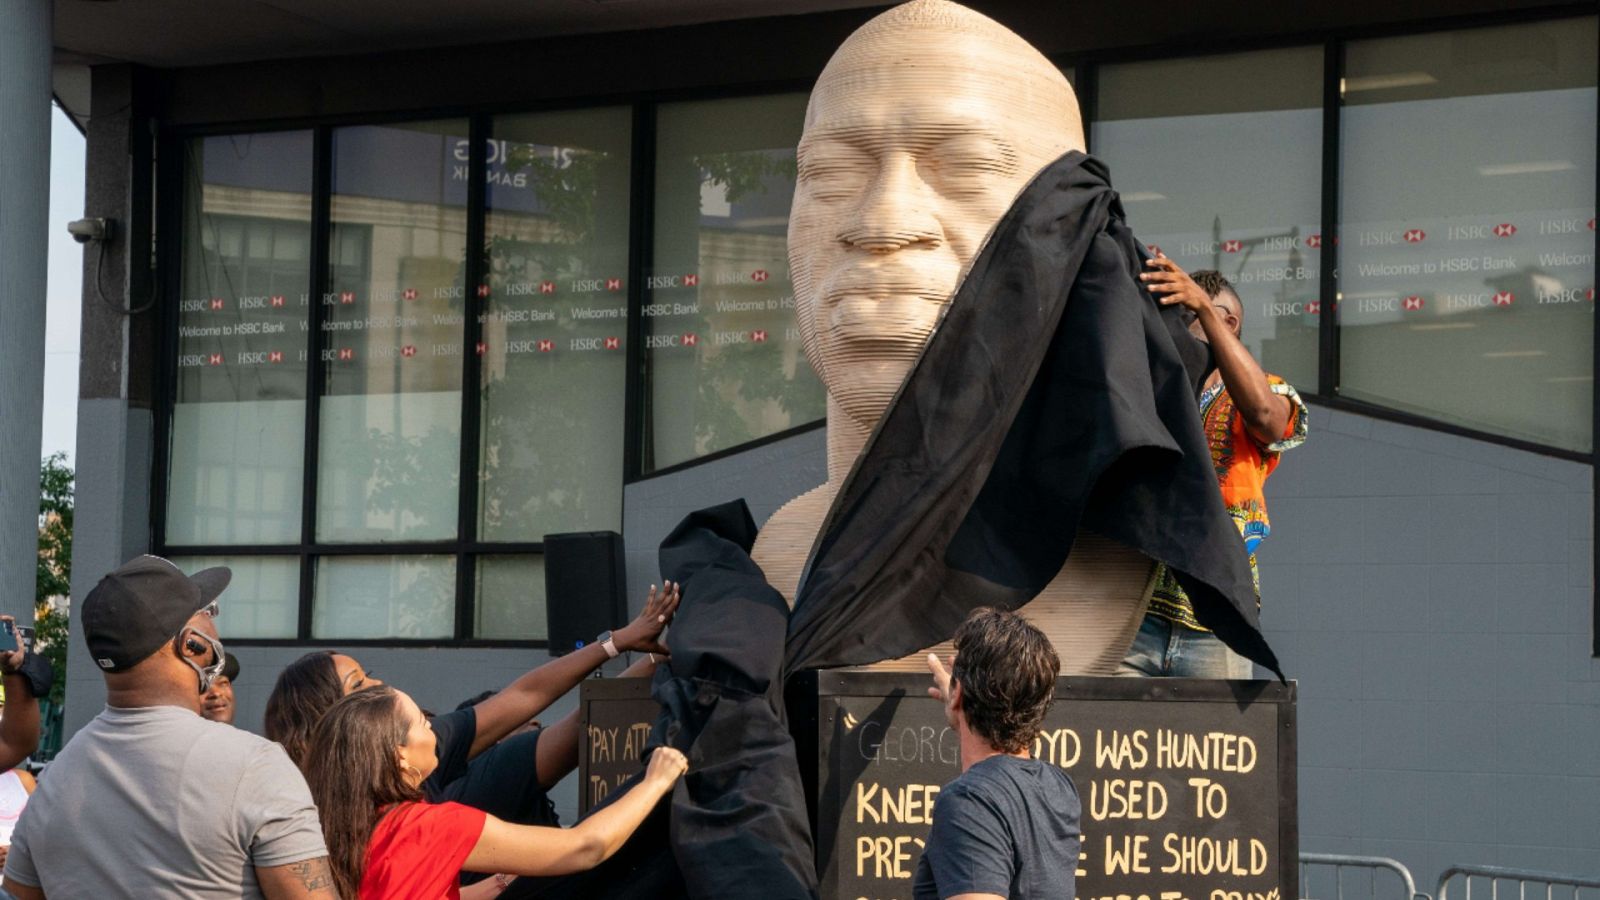 Una imagen de la inauguración de un busto de George Floyd frente a la Biblioteca pública del distrito de Brooklyn, Nueva York.